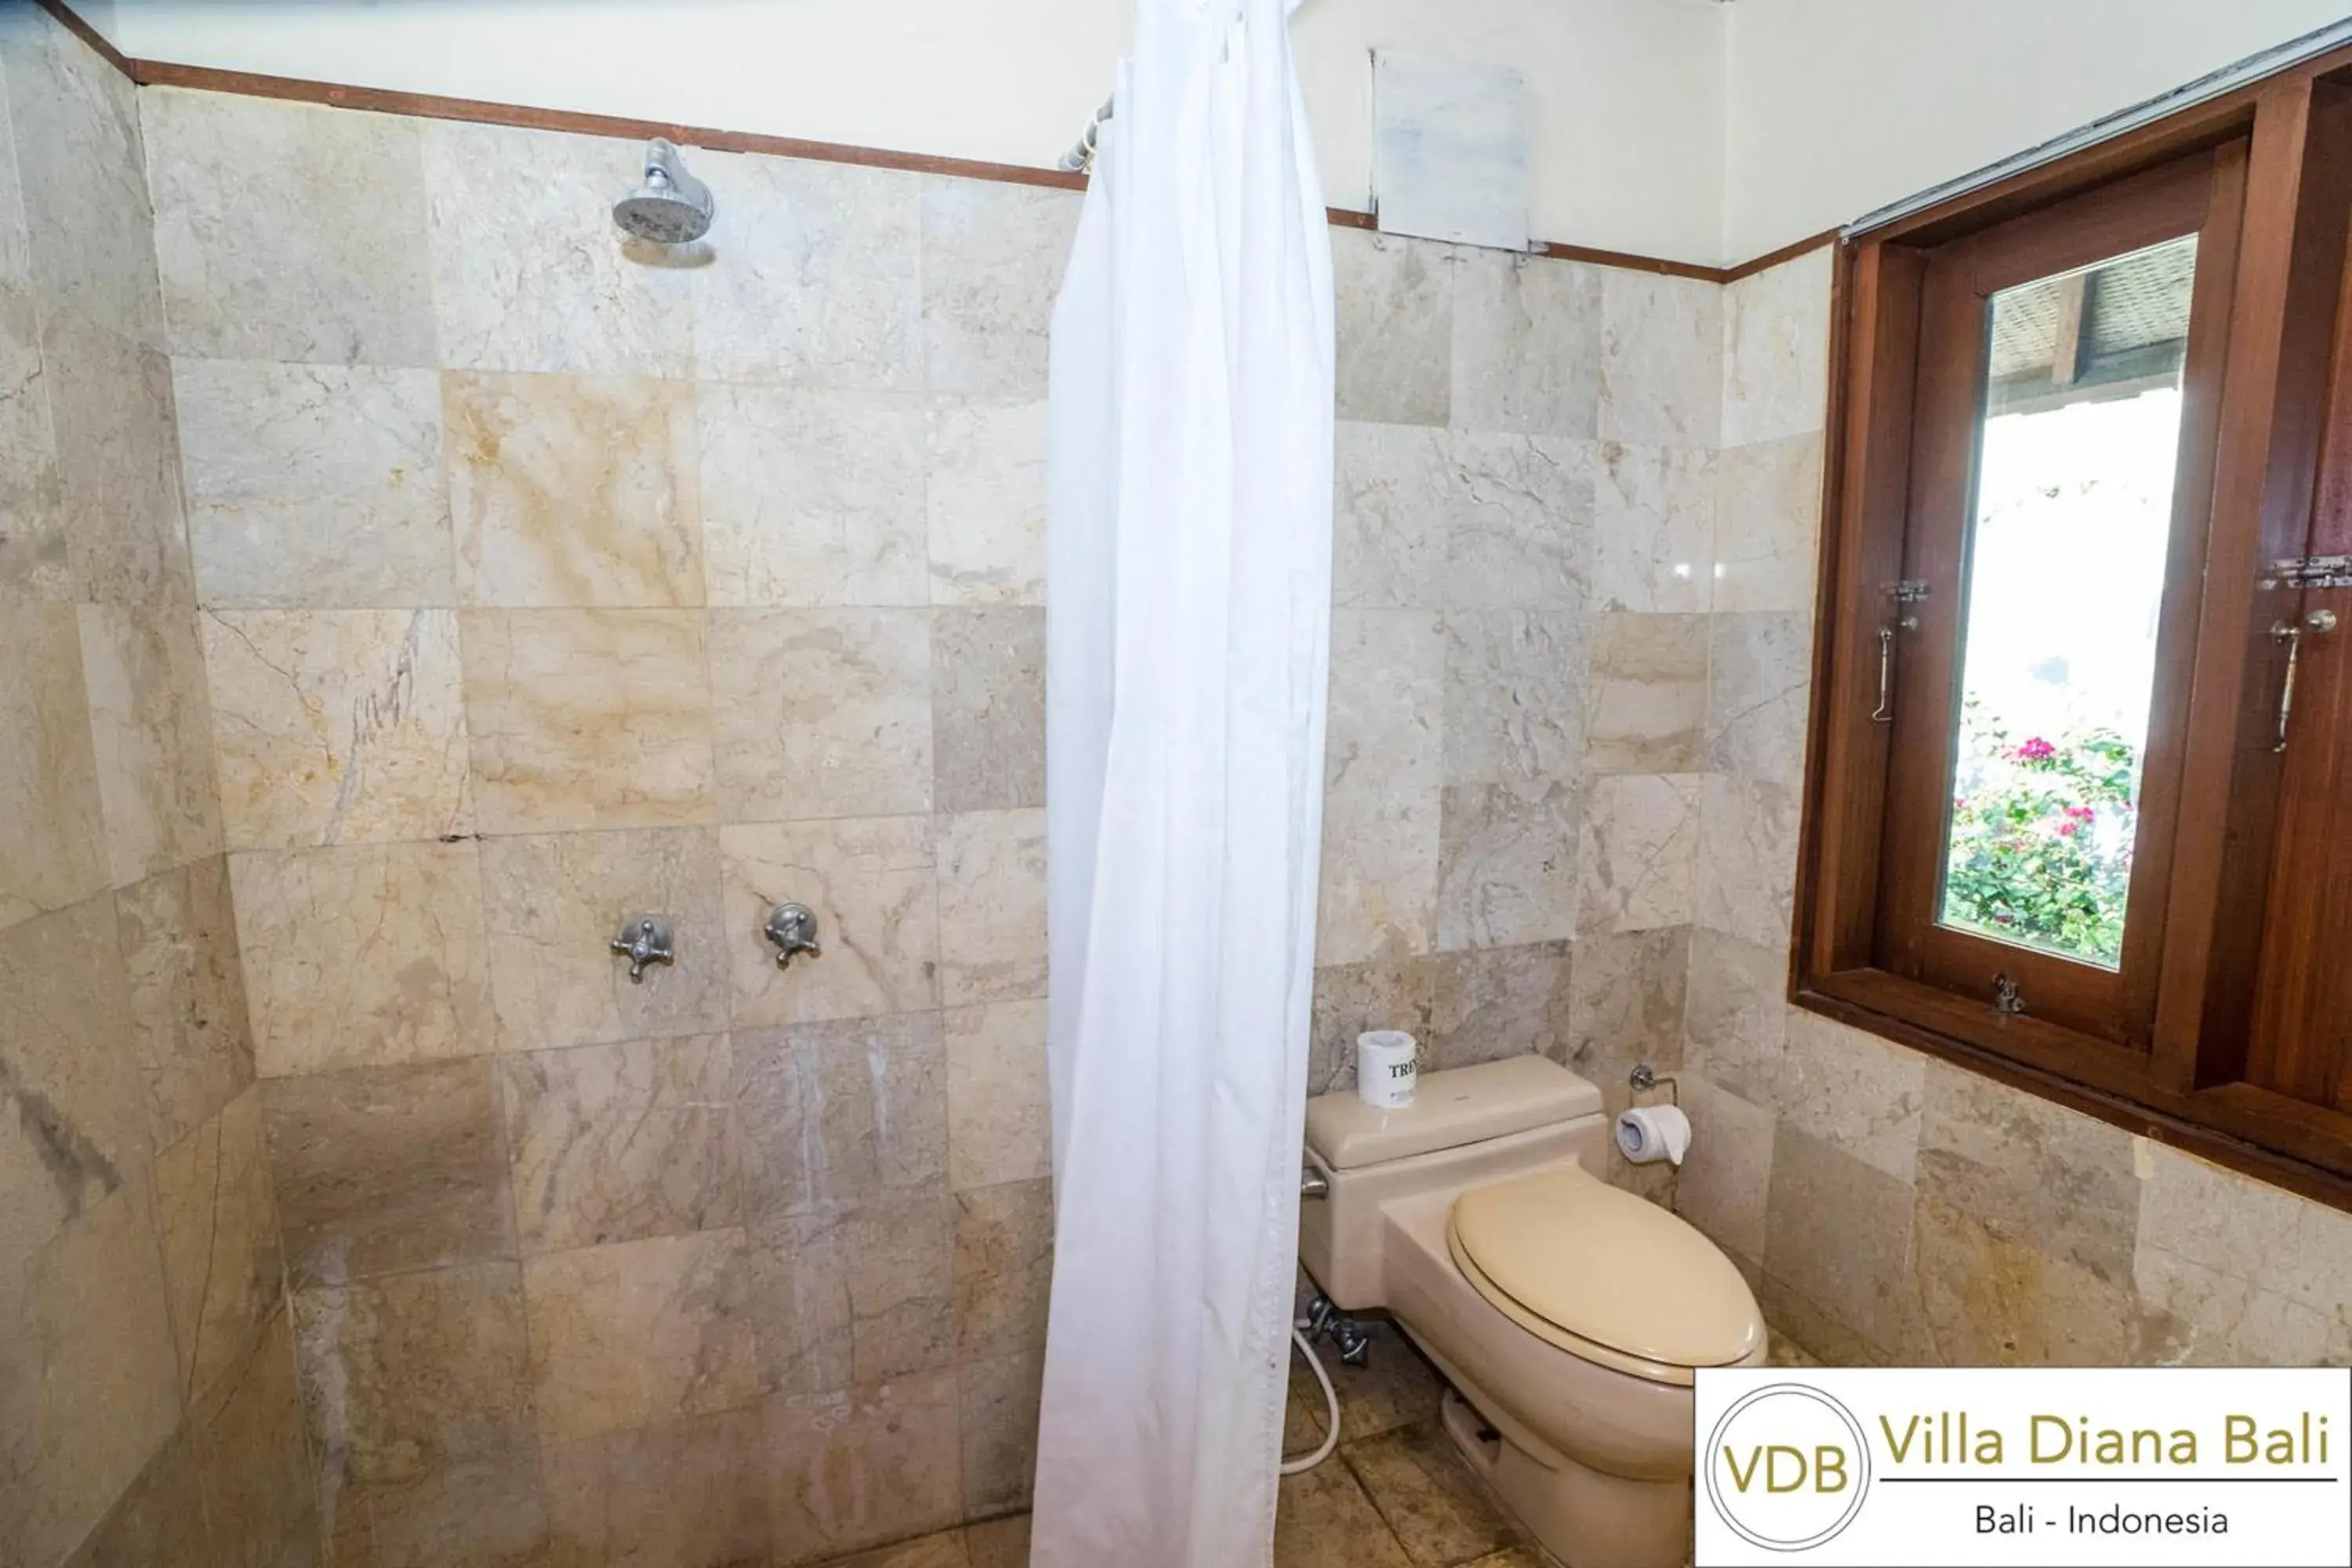 Toilet, Bathroom in Villa Diana Bali